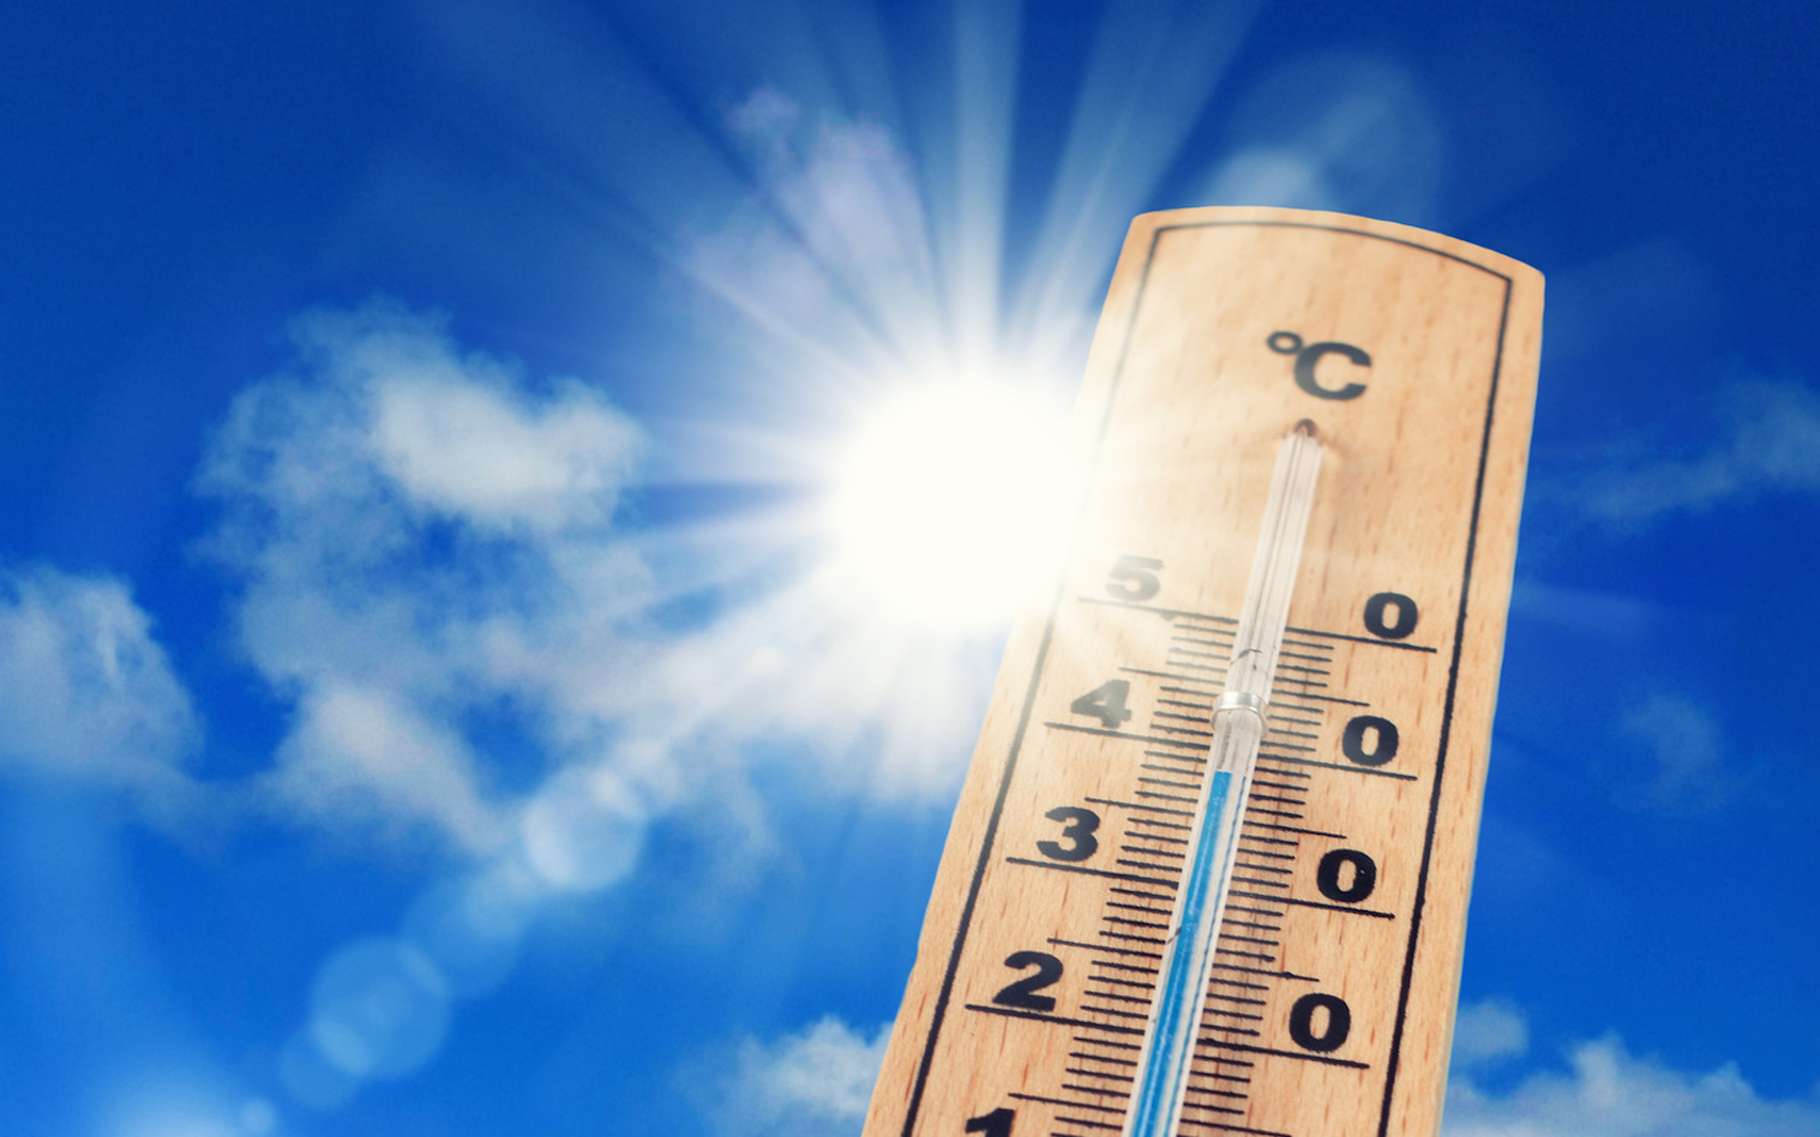 Juillet 2019 a été le mois le plus chaud sur la planète, confirme la NOAA